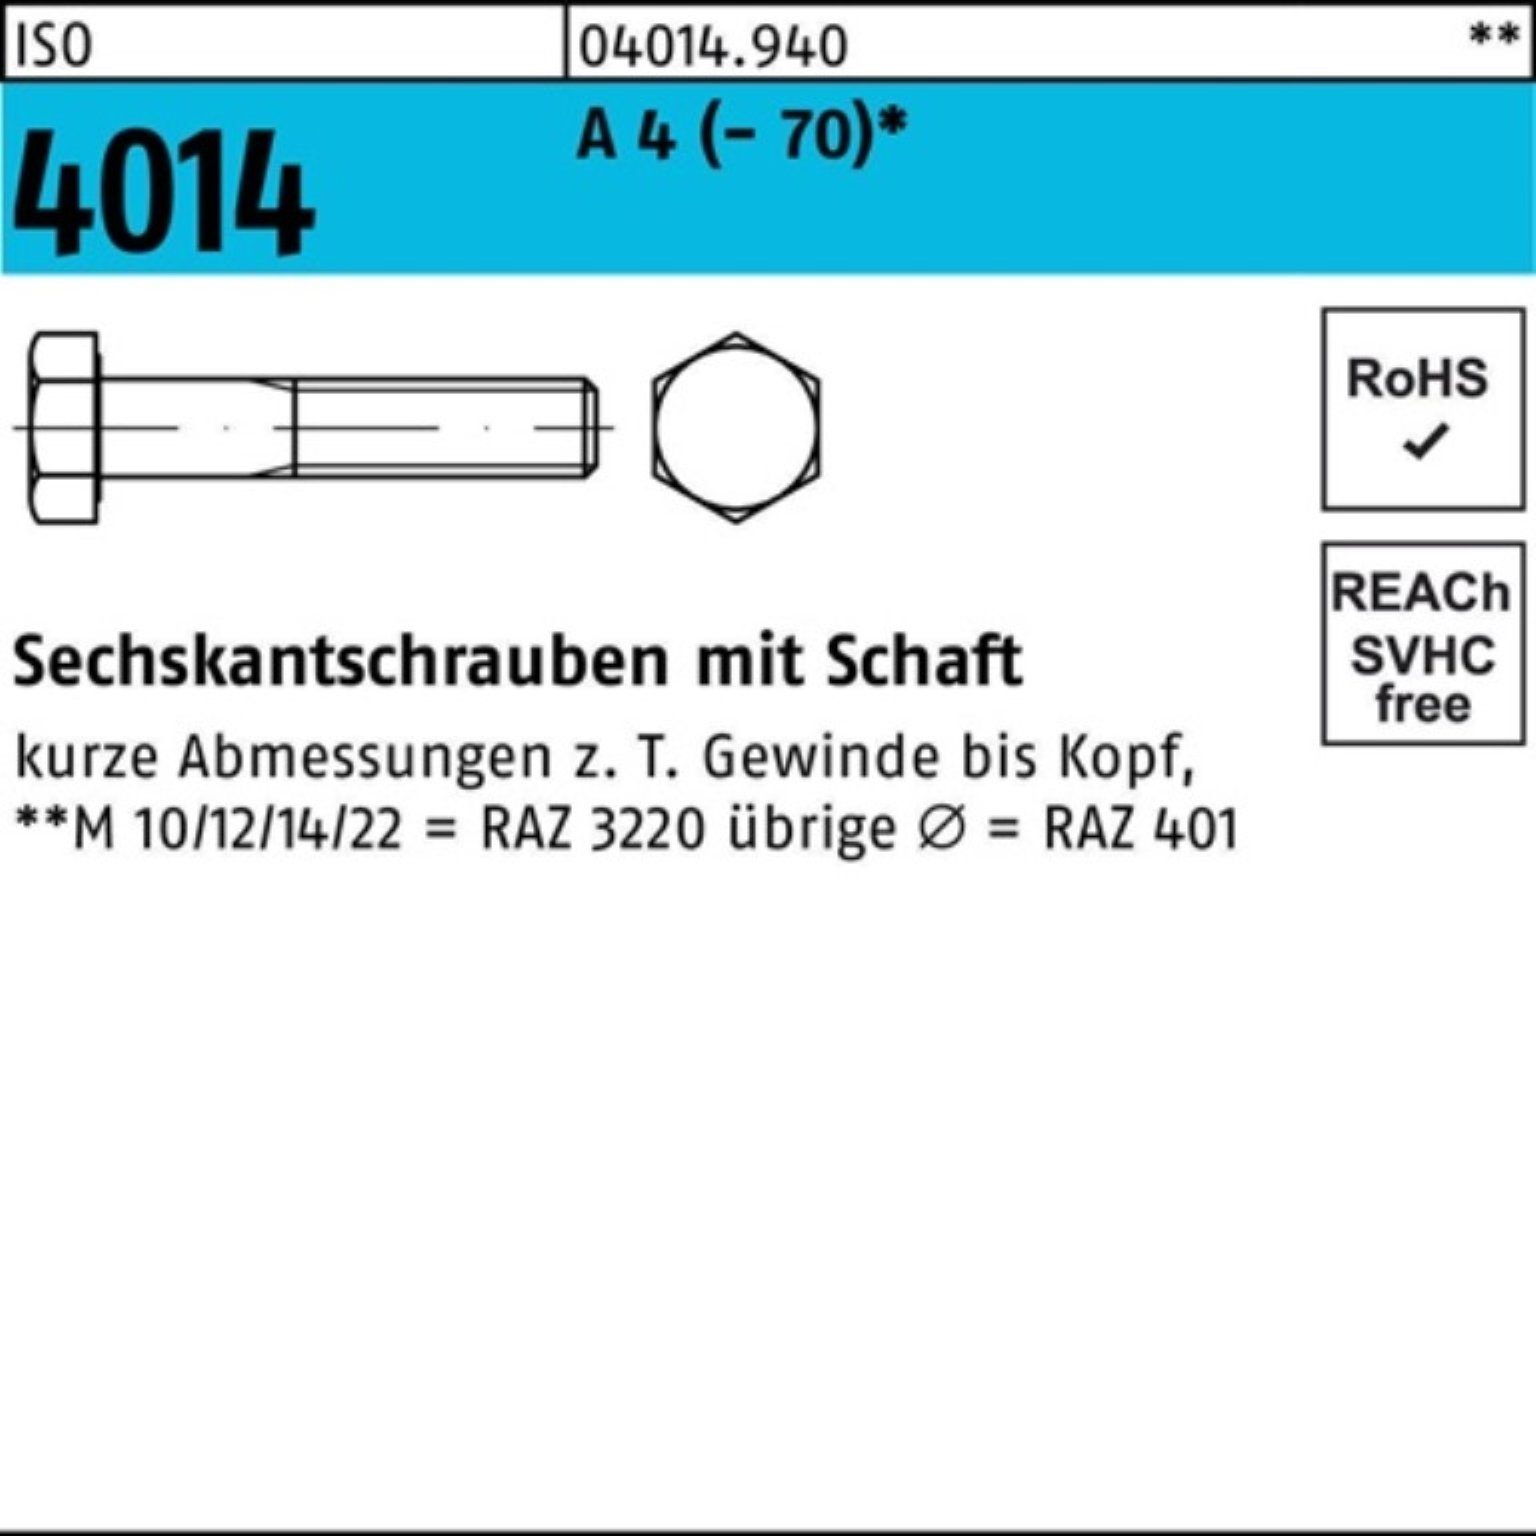 Bufab Sechskantschraube 100er Pack Sechskantschraube ISO 4014 Schaft M16x 85 A 4 (70) 25 St